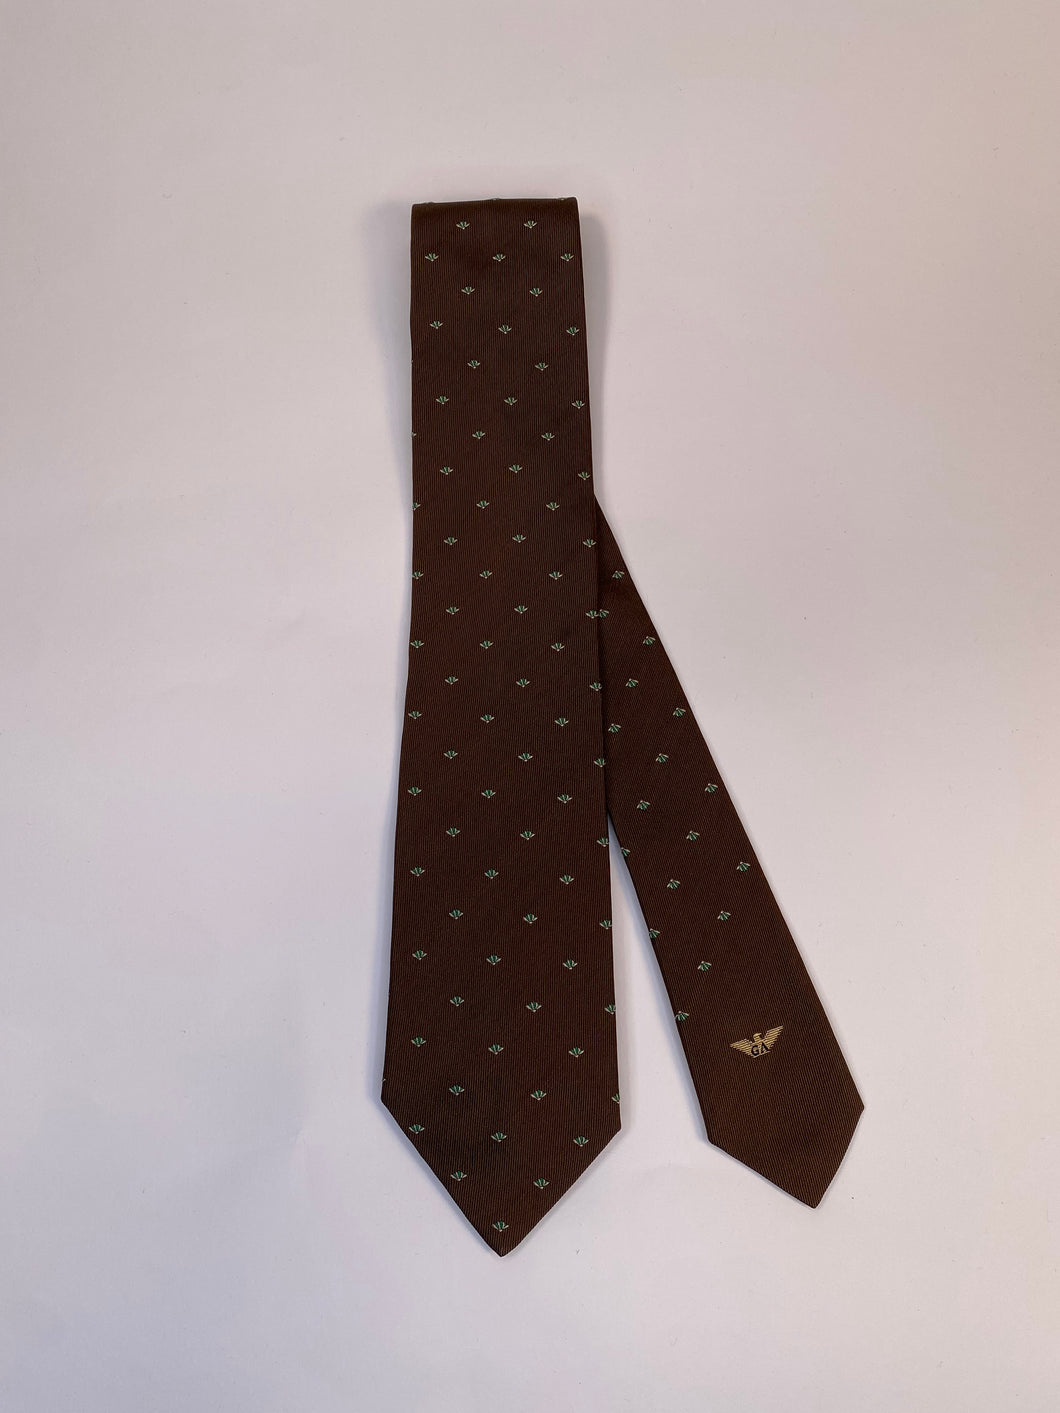 1980s Giorgio Armani necktie brown